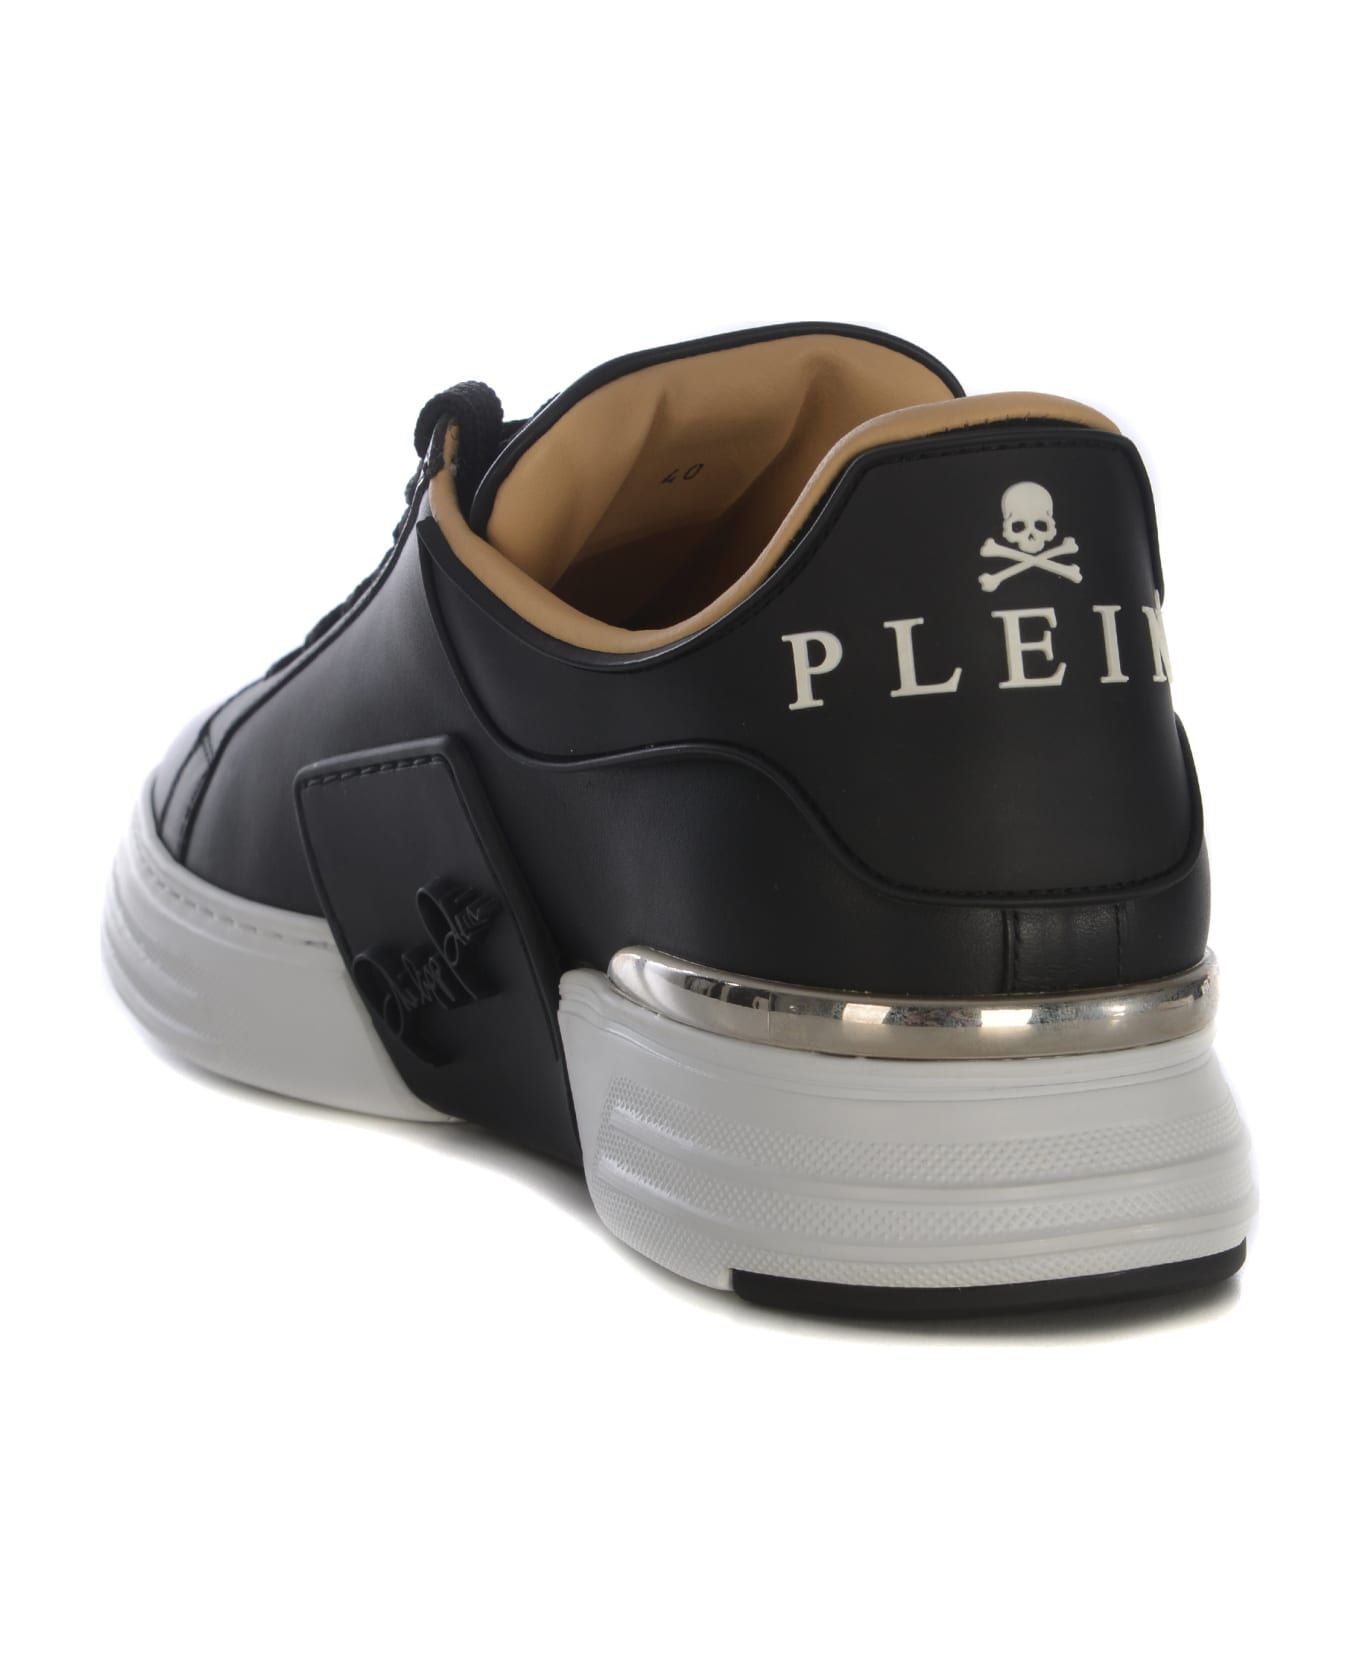 Philipp Plein Sneakers Philipp Plein "phantom" In Leather - Nero